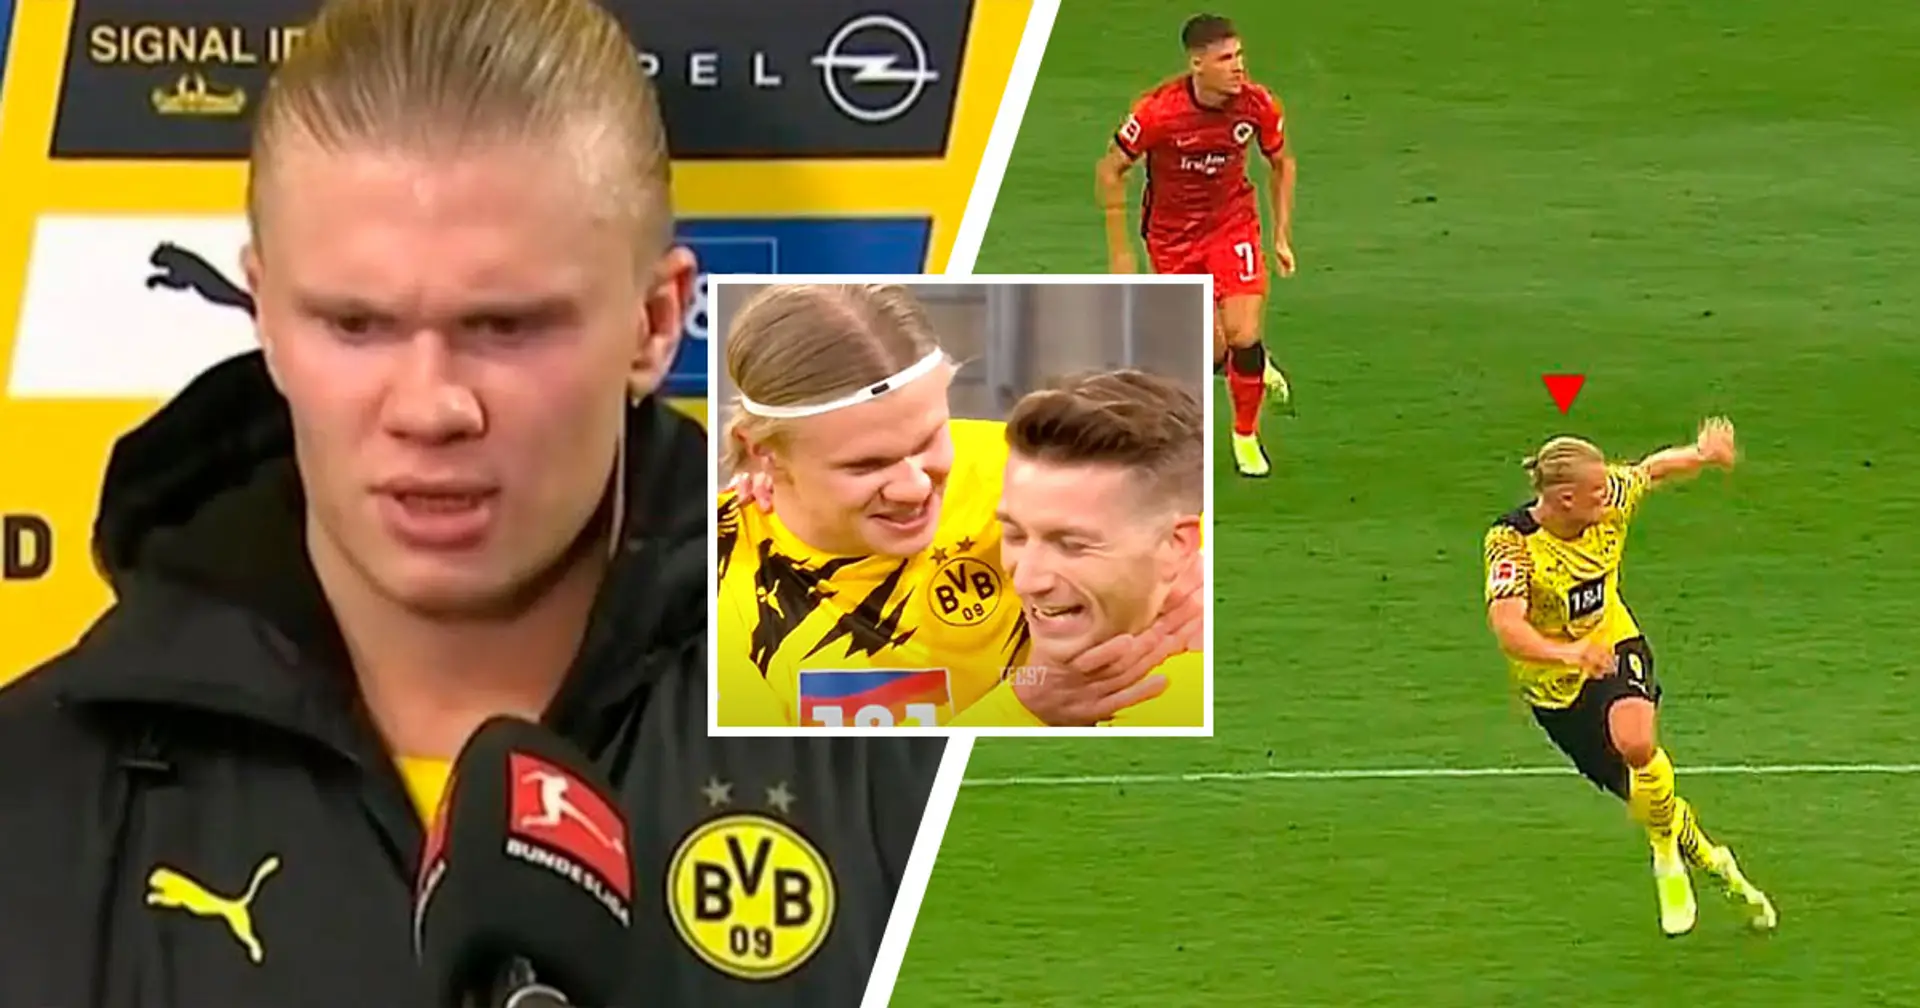 Haaland après le match d'hier soir: "Dortmund me met la pression. Je n'ai jamais parlé jusqu'à présent par respect. Les choses vont se passer autrement maintenant"